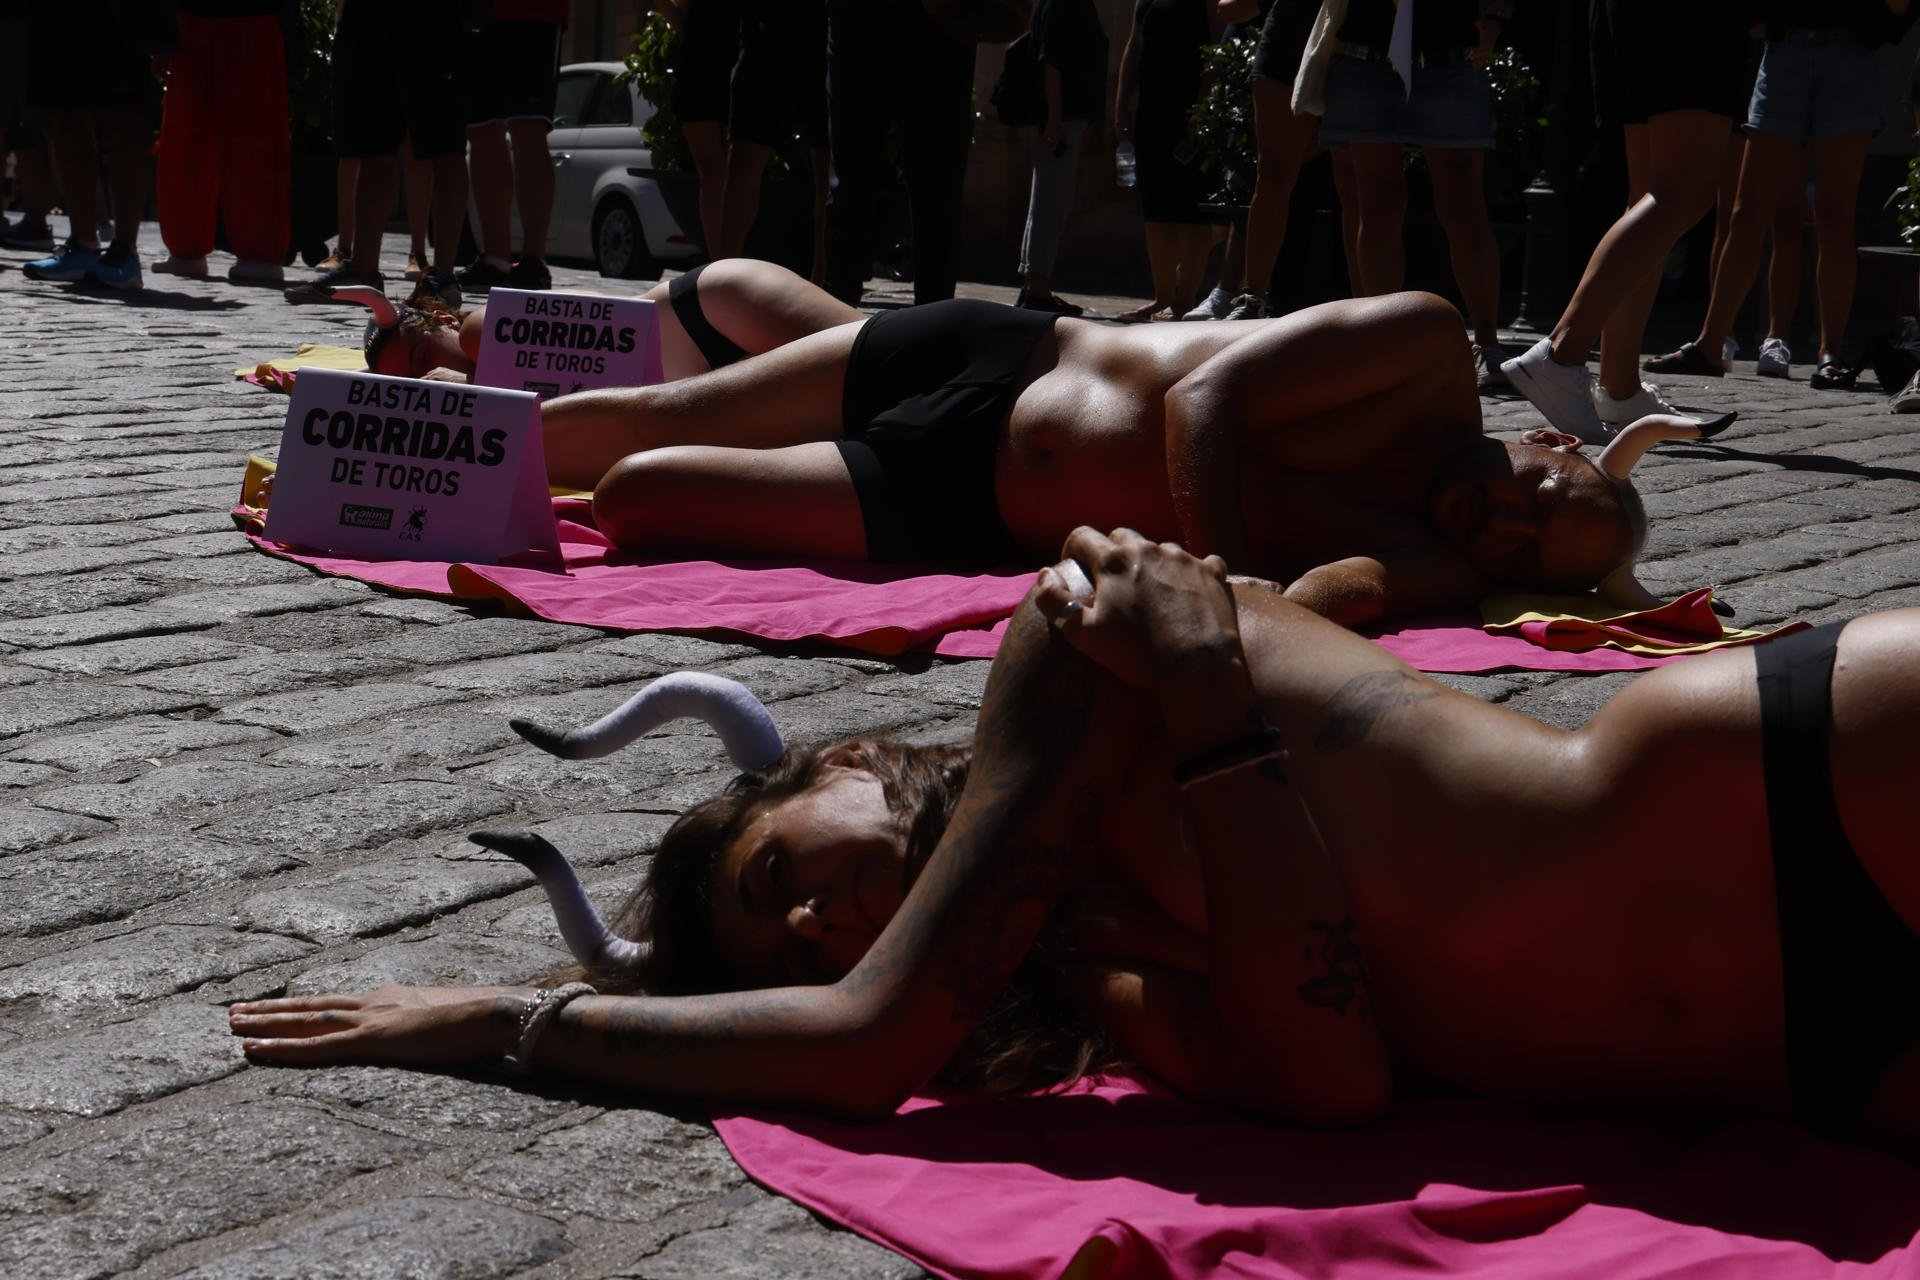 Activistes es despullen per protestar contra els toros a Palma